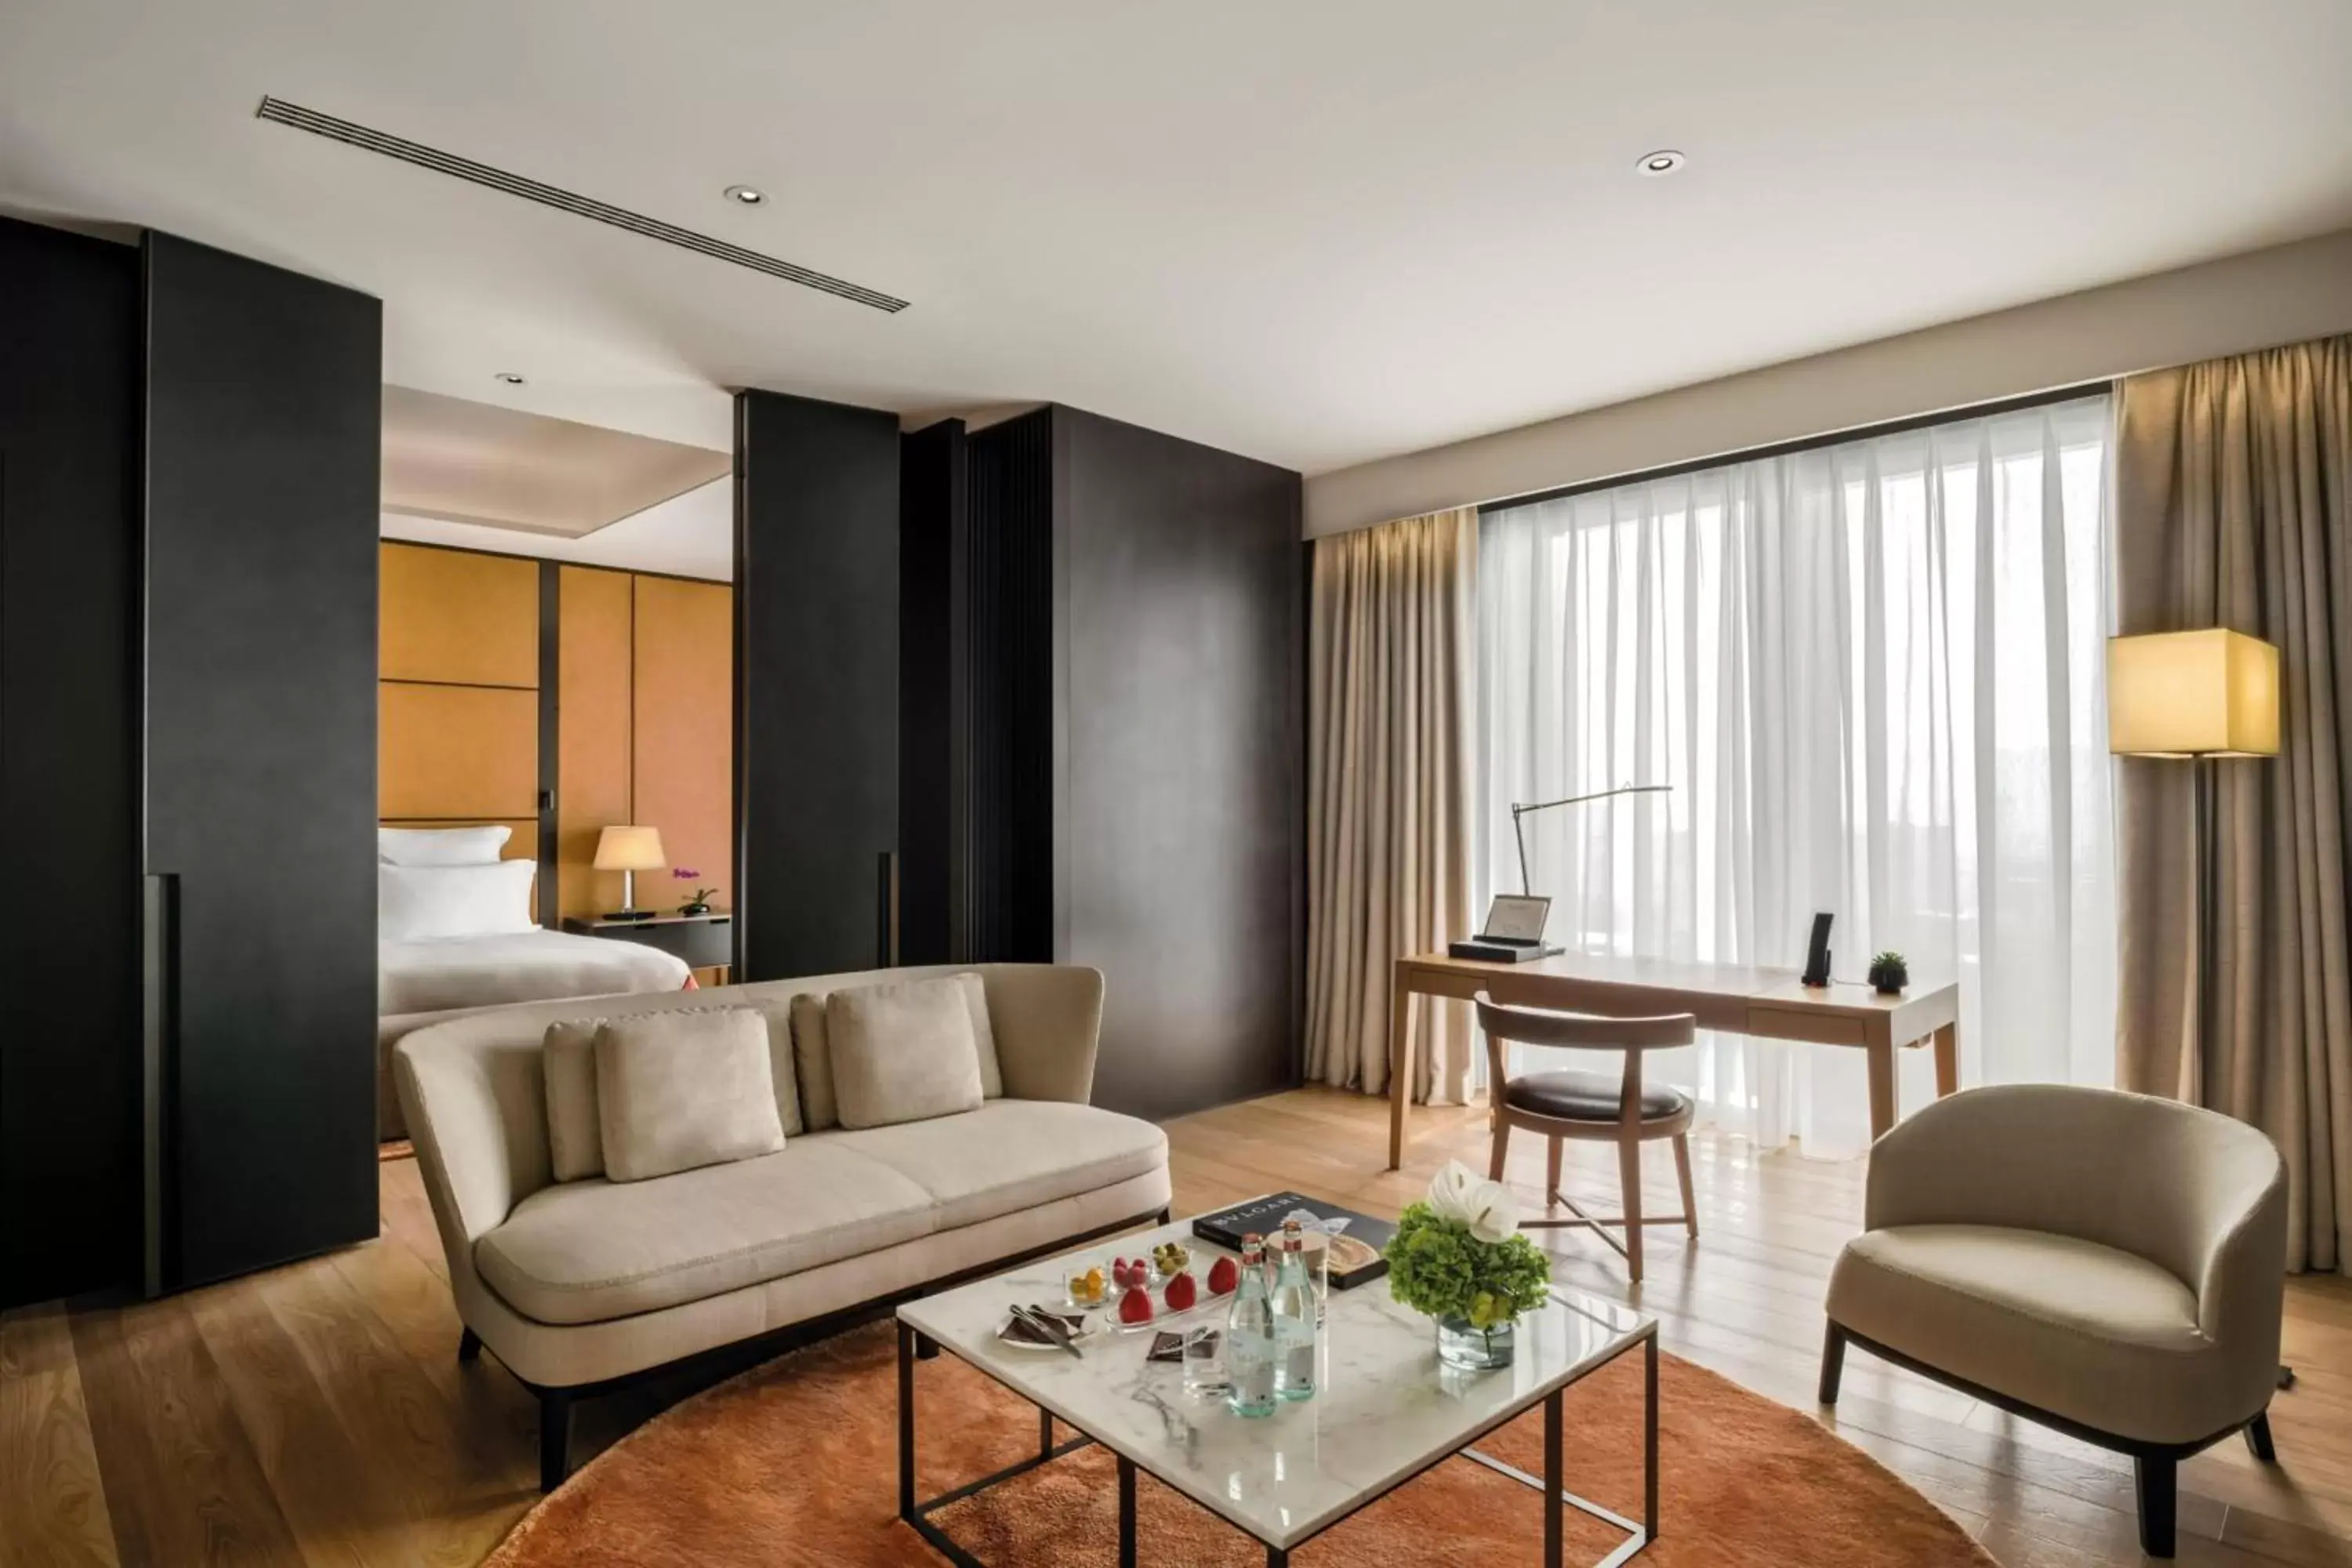 Bedroom, Seating Area in Bulgari Hotel, Beijing